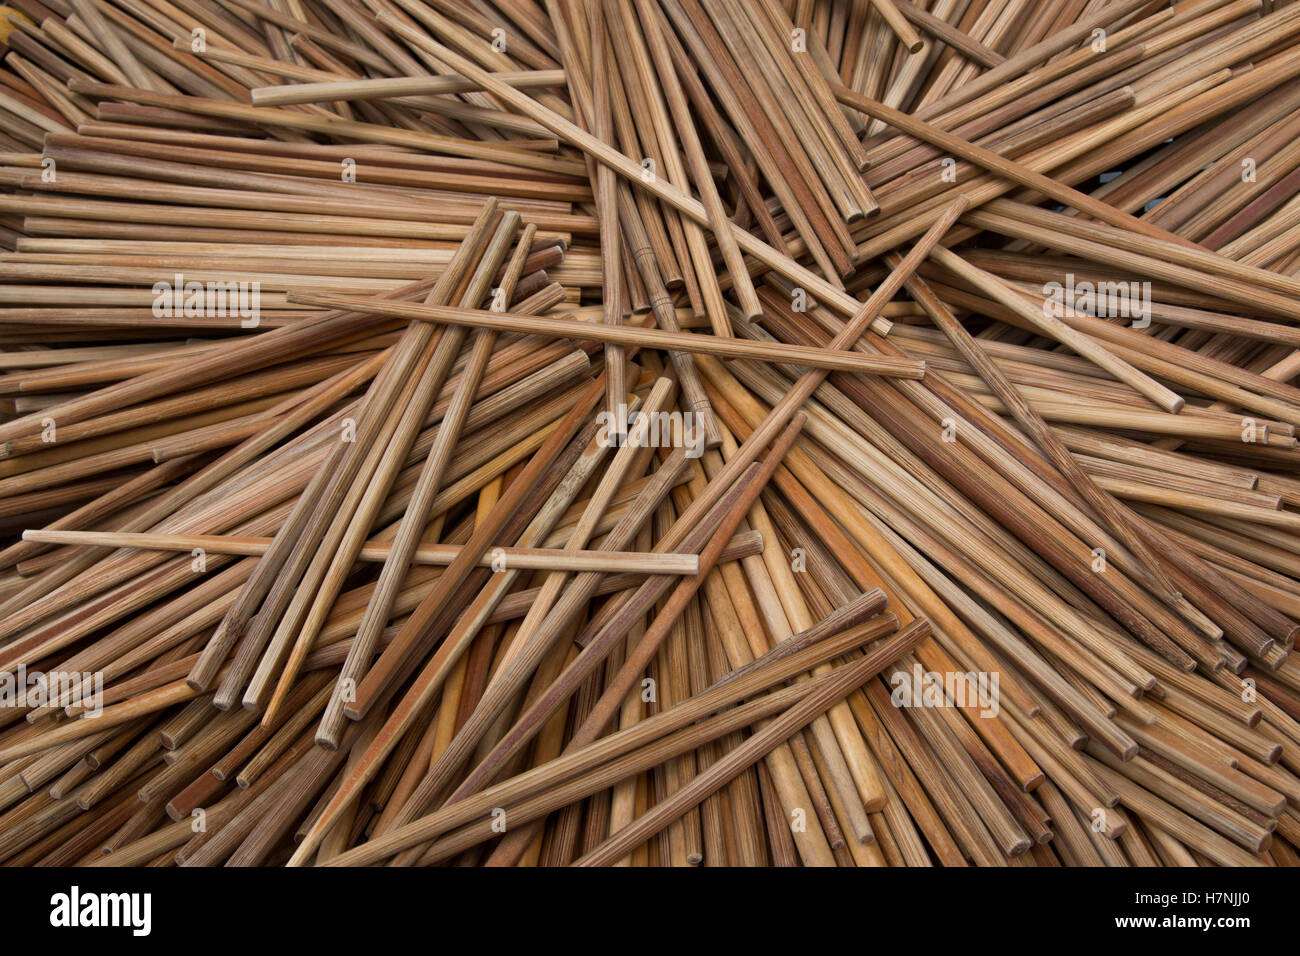 heap wooden chopsticks Stock Photo